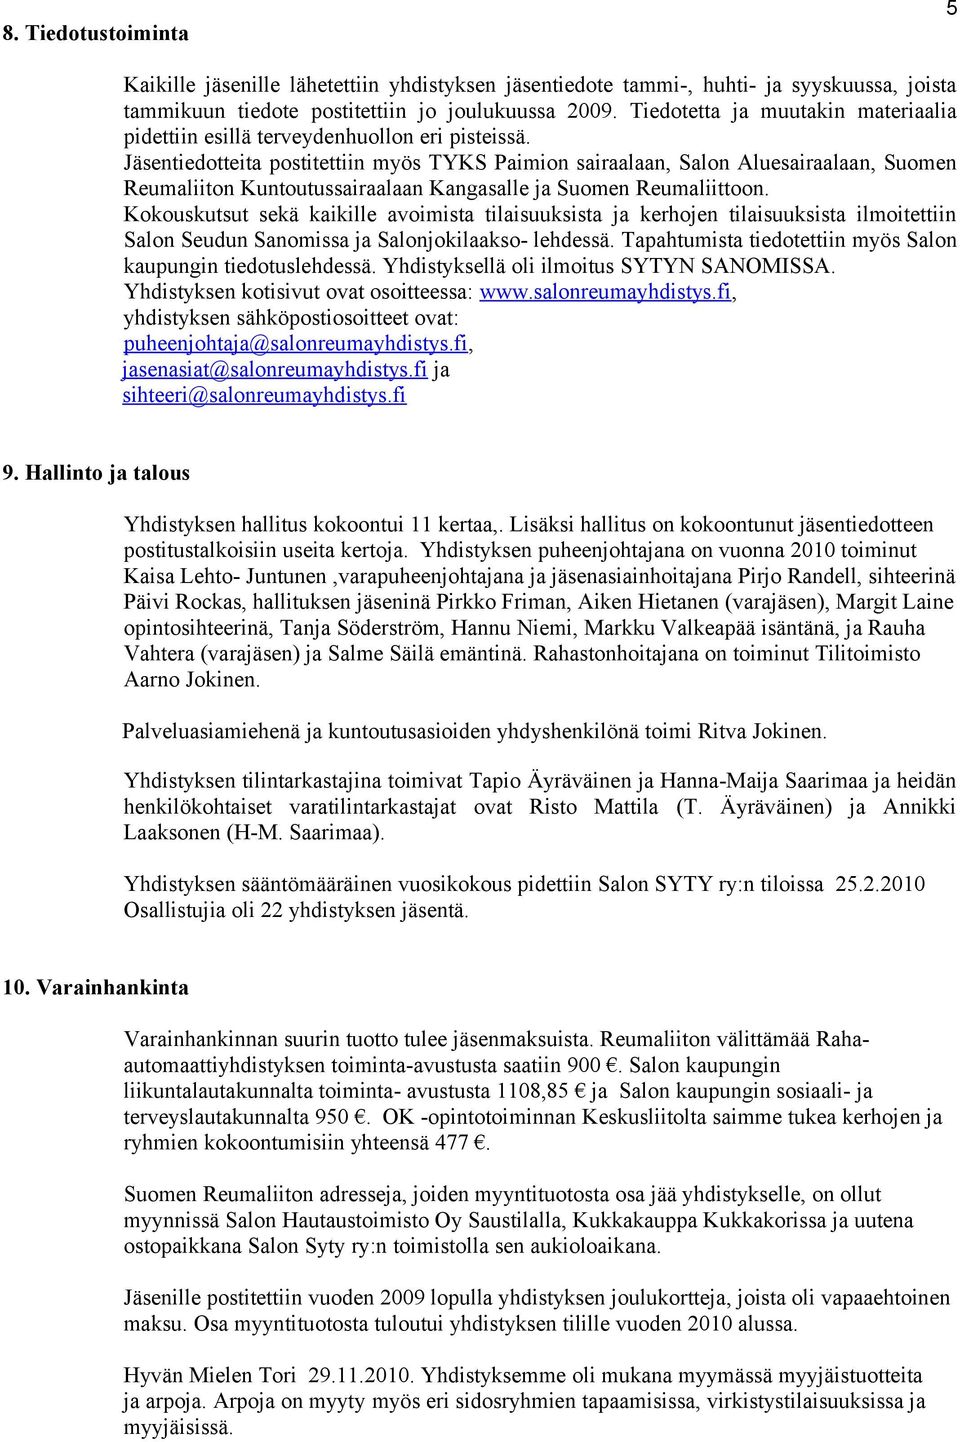 Jäsentiedotteita postitettiin myös TYKS Paimion sairaalaan, Salon Aluesairaalaan, Suomen Reumaliiton Kuntoutussairaalaan Kangasalle ja Suomen Reumaliittoon.